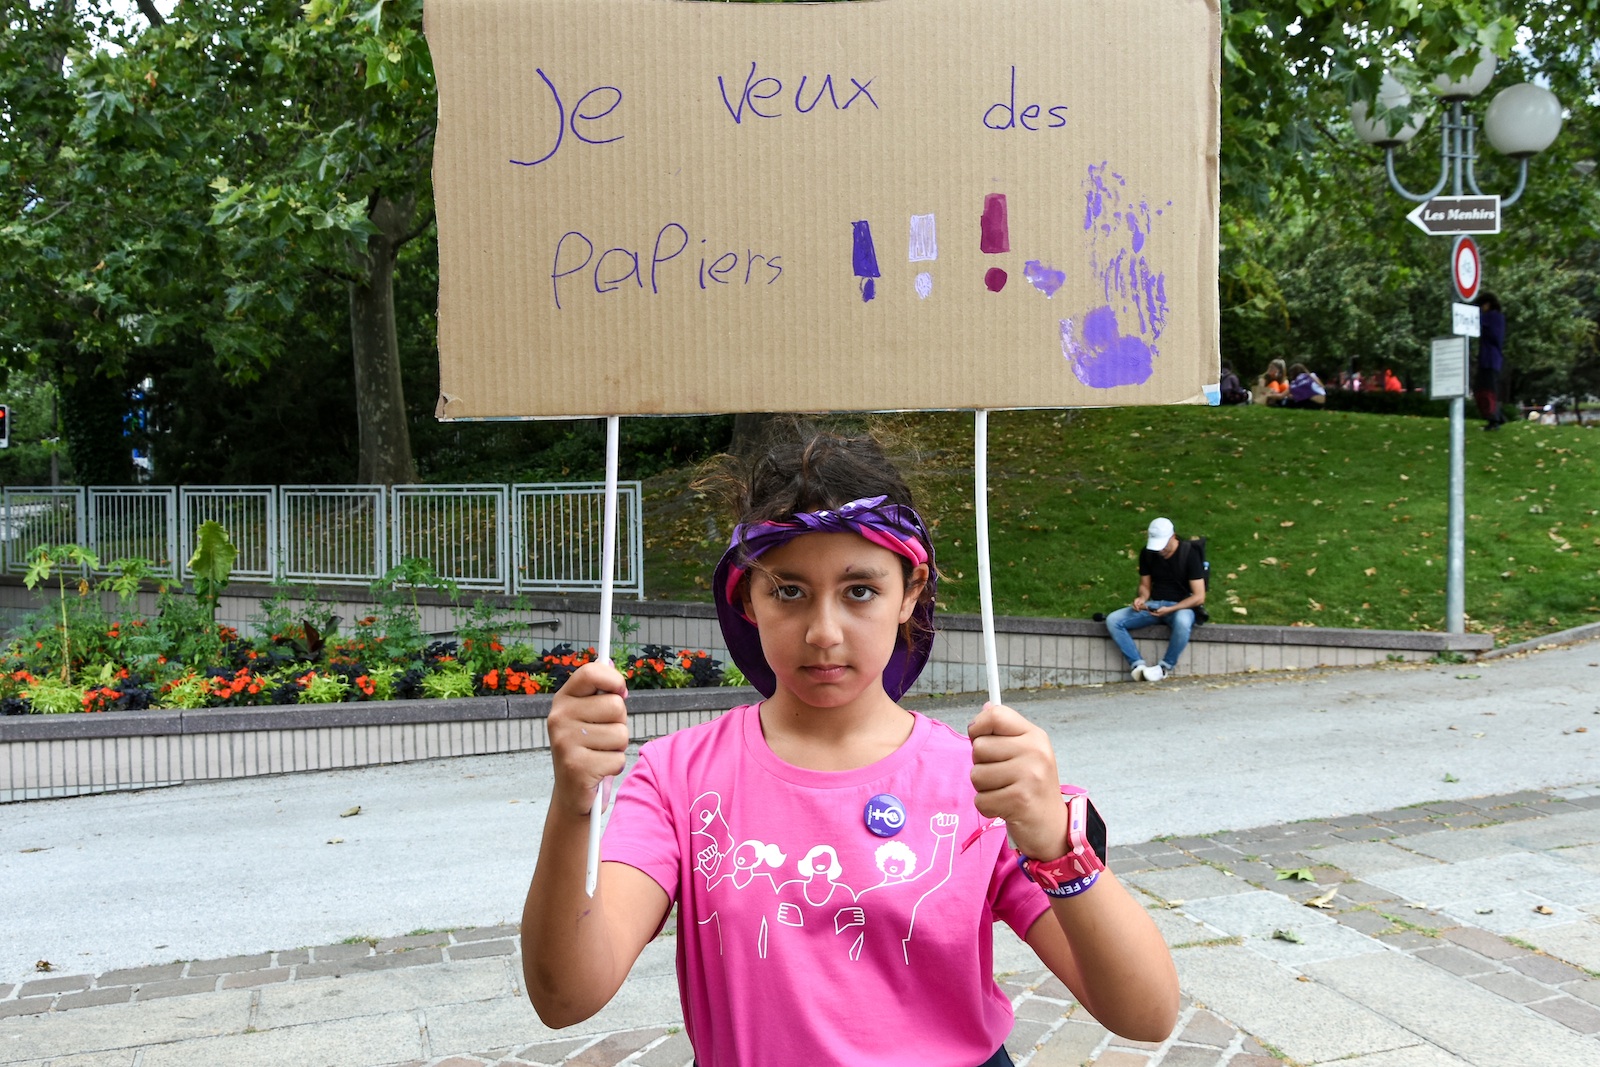 Sofia et sa pancarte "Je veux des papiers".